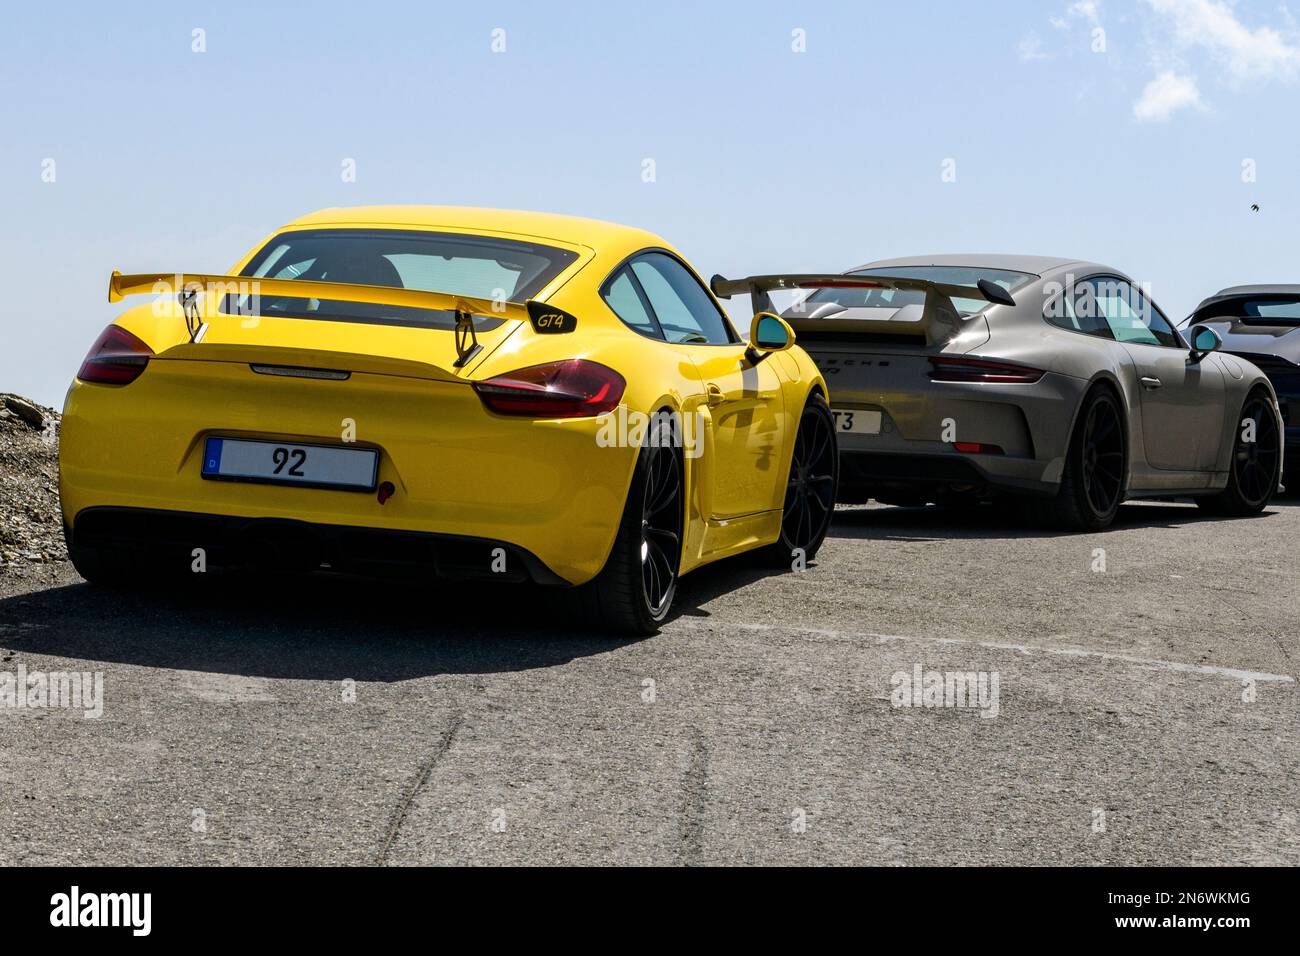 vorne Sportwagen gelber Porsche Cayman GT4 mit Heckflügel Spoiler dahinter Porsche 911 GT3 mit Heckspoiler, Cime de la Bonette, Alpen, Frankreich Stock Photo